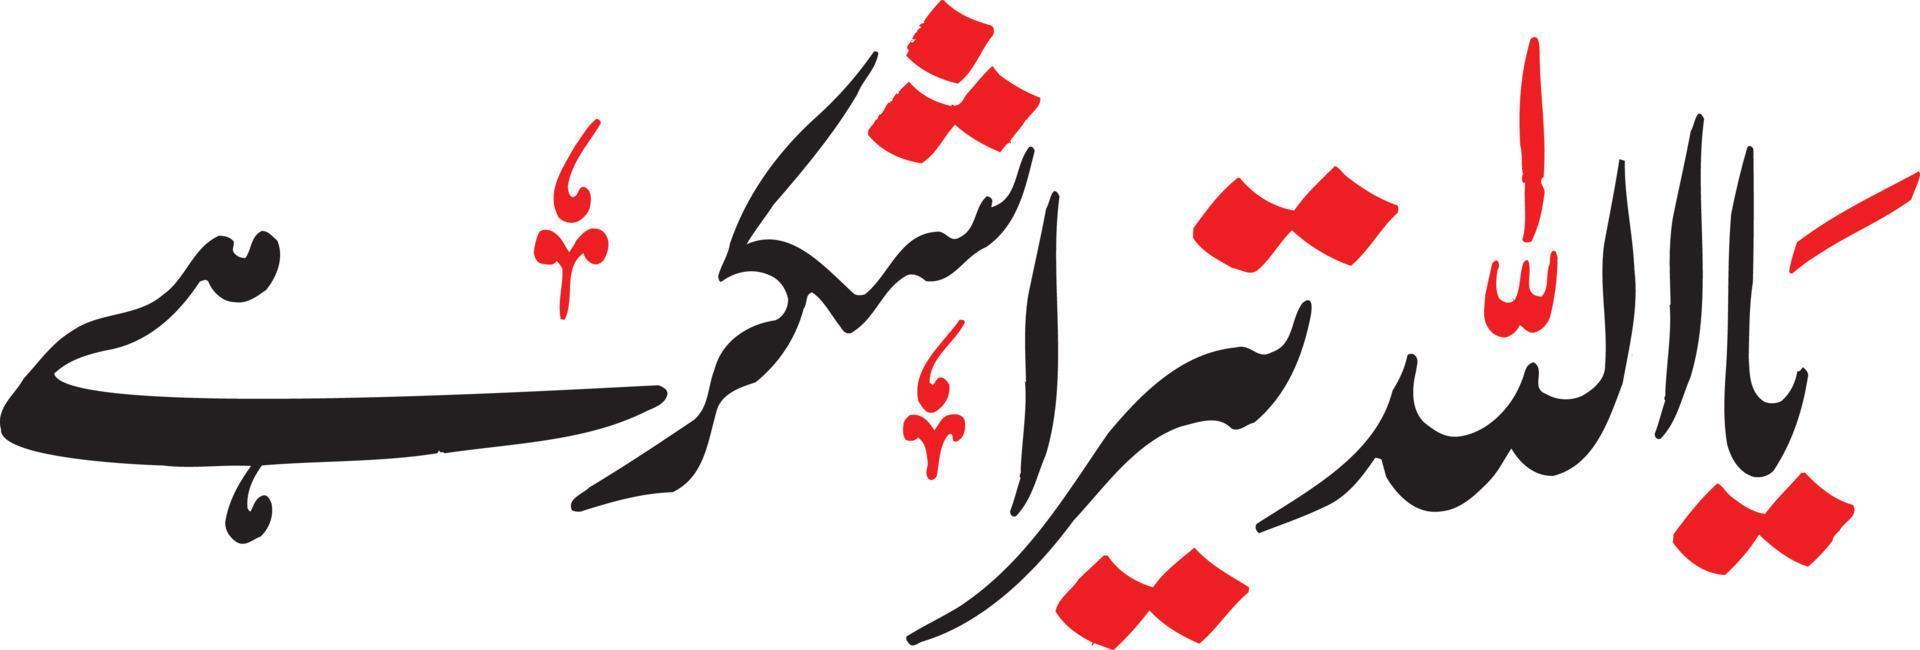 ya allaha teera shoker oye título caligrafía árabe islámica vector libre